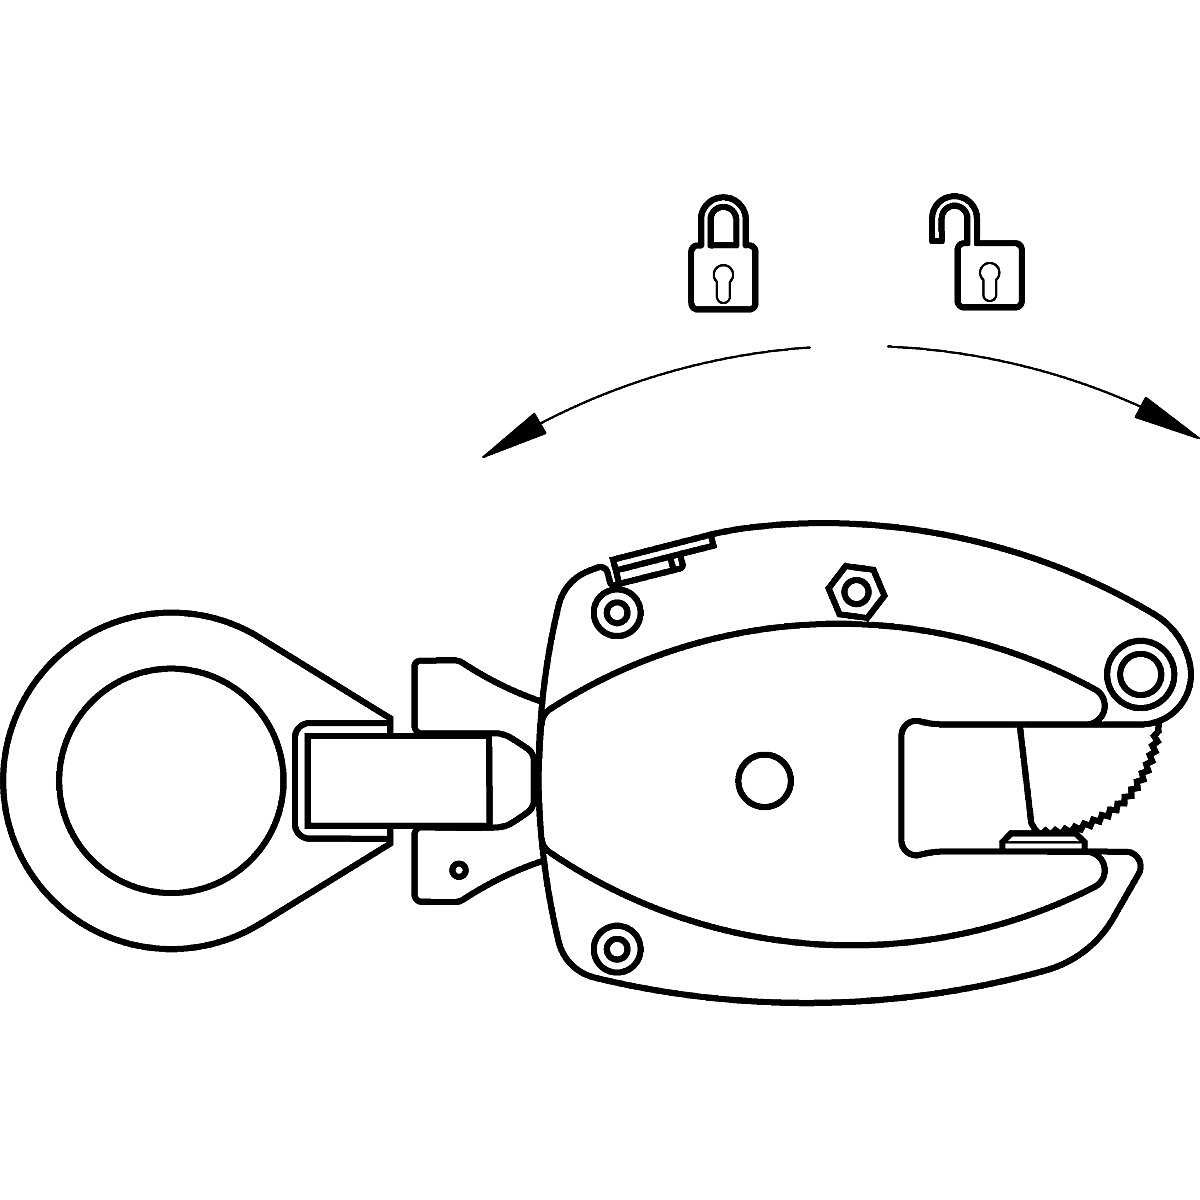 Grampo de carga modelo KL, utilização vertical – Pfeifer (Imagem do produto 6)-5